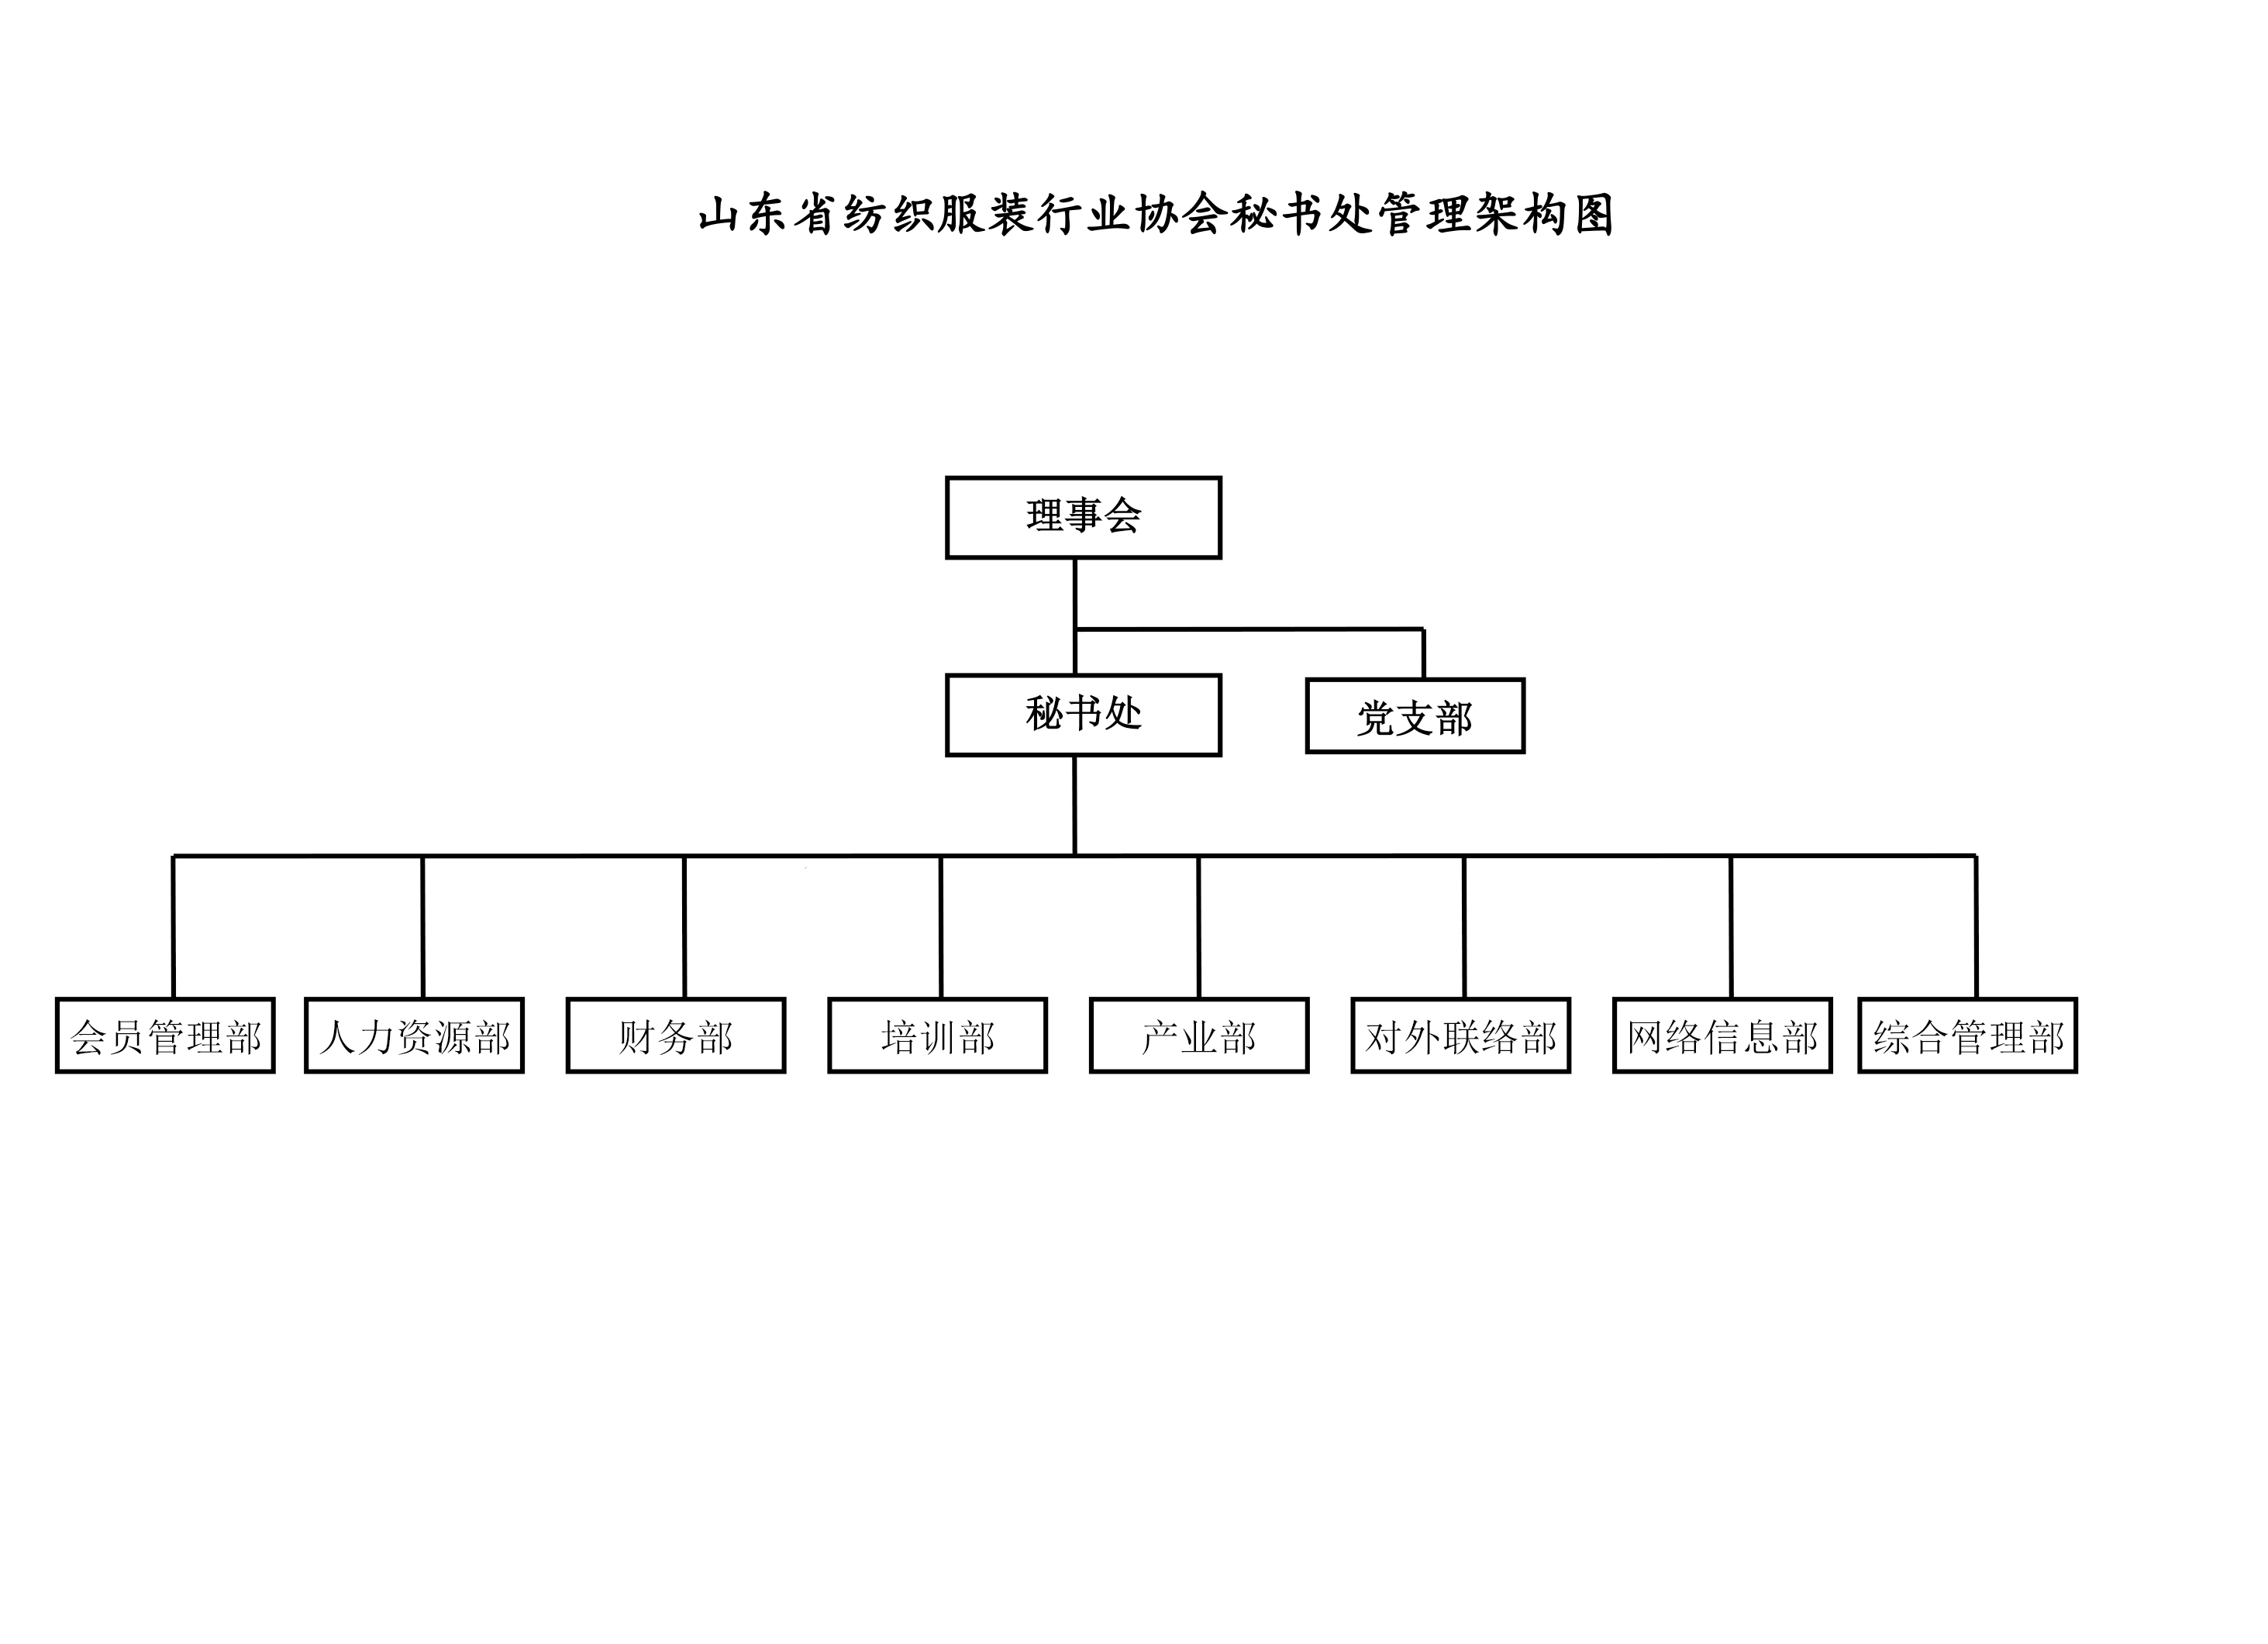 1、組織架構圖-2.jpg